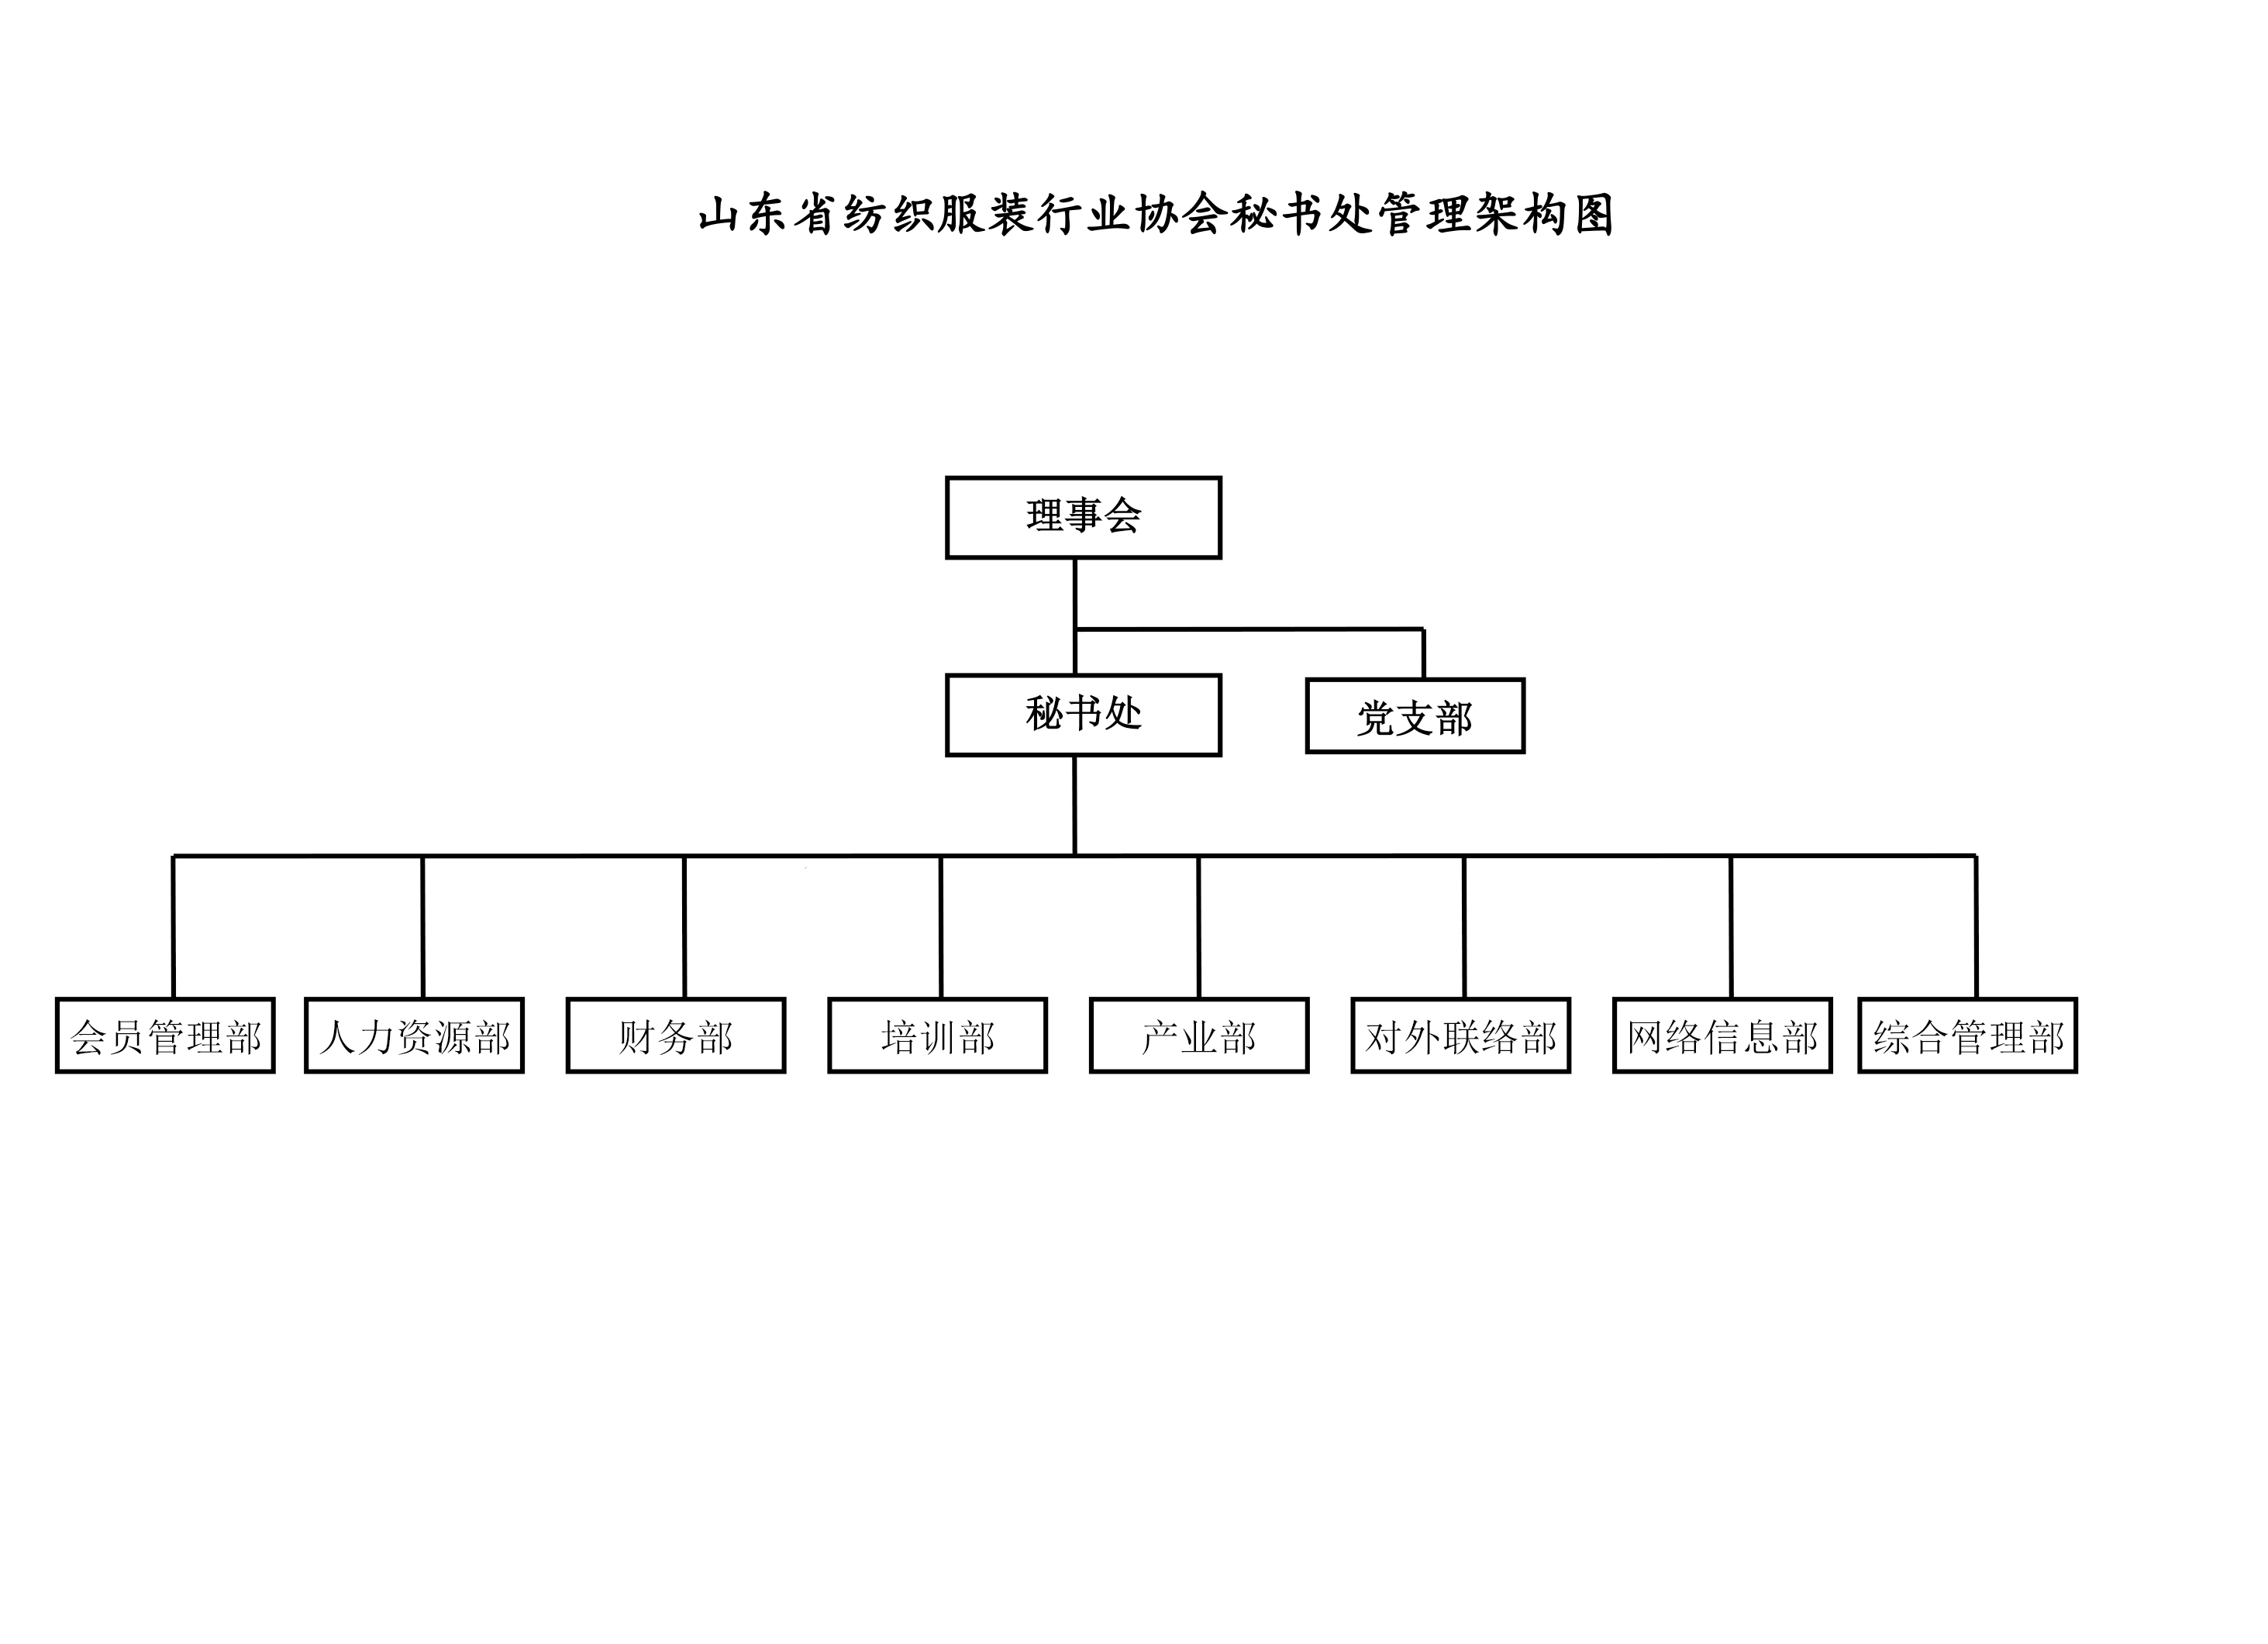 1、組織架構圖-2.jpg